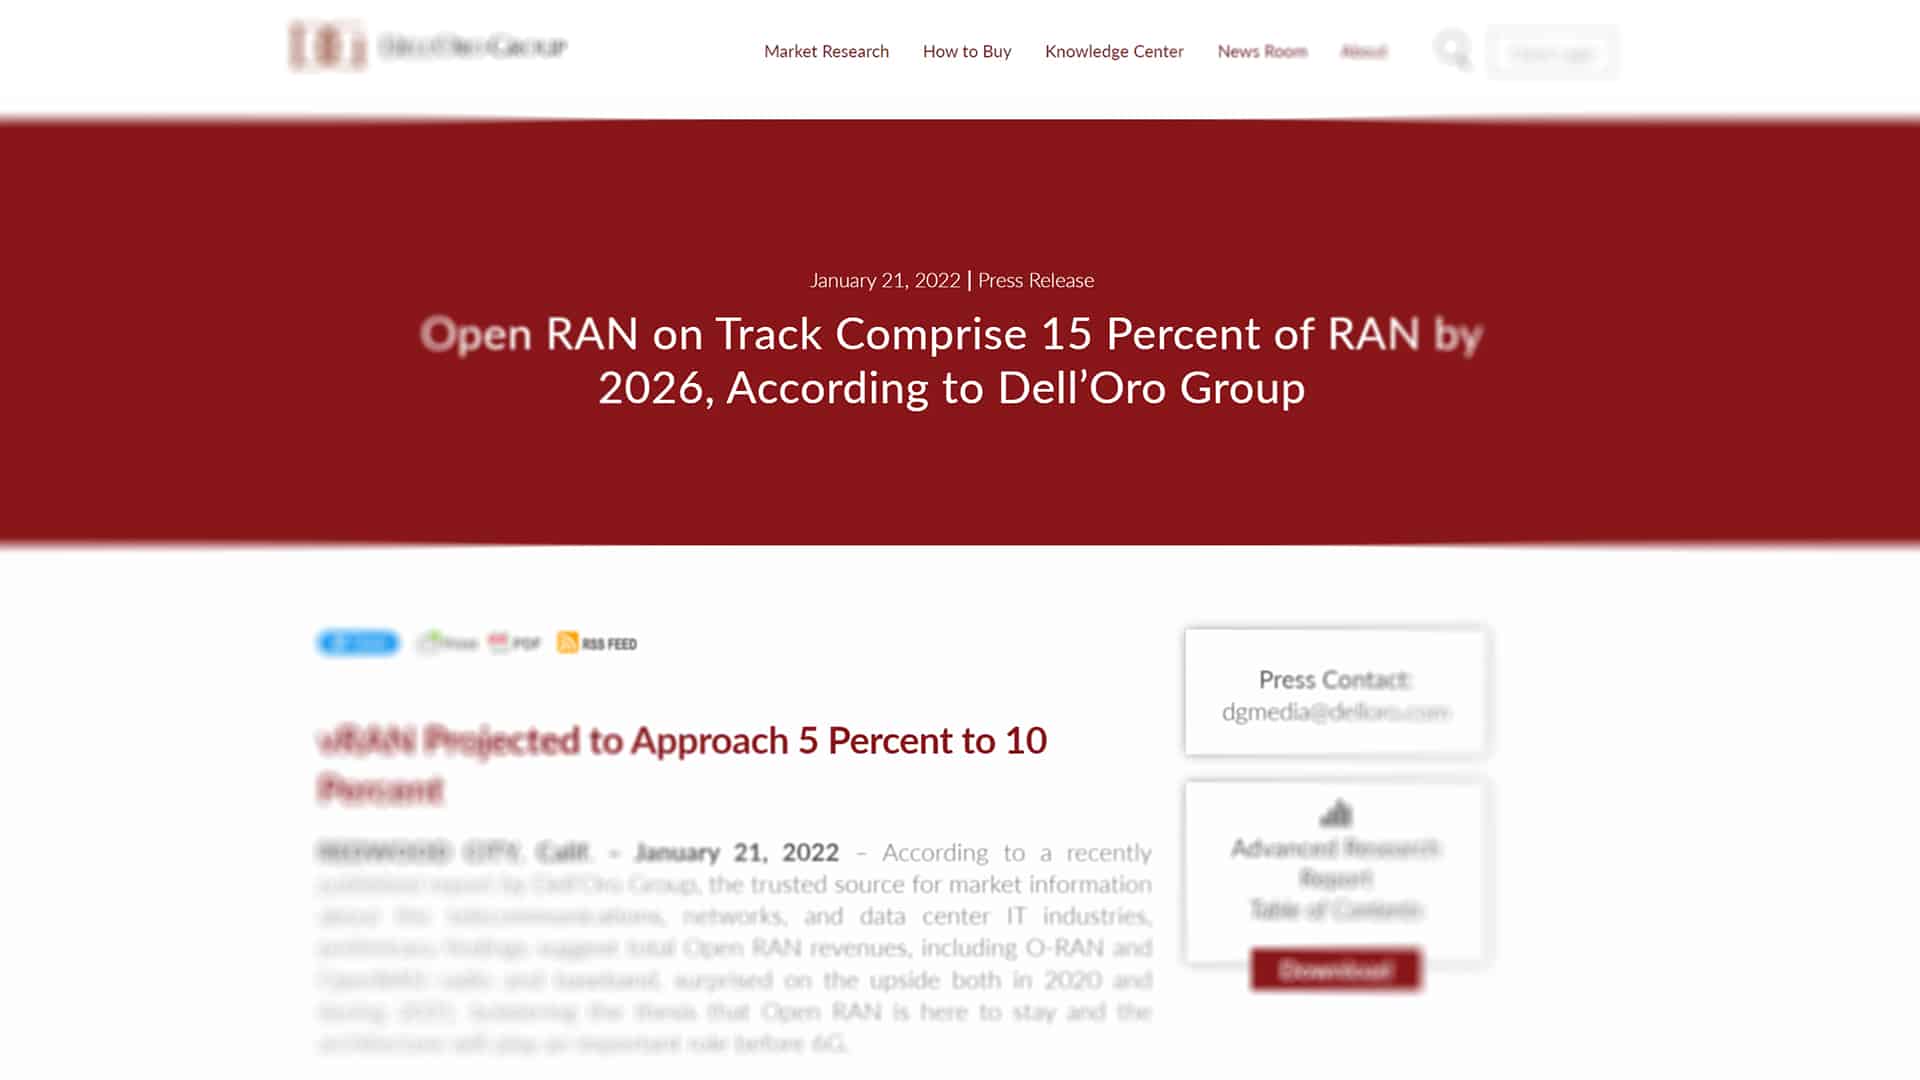 Компания Dell’Oro дала несколько новых прогнозов по развитию OpenRAN и vRAN.

 	Ожидается, что к 2026 году доходы от OpenRAN составят около 15 процентов от общего рынка 2G-5G RAN.
 	Азиатско-Тихоокеанский регион…